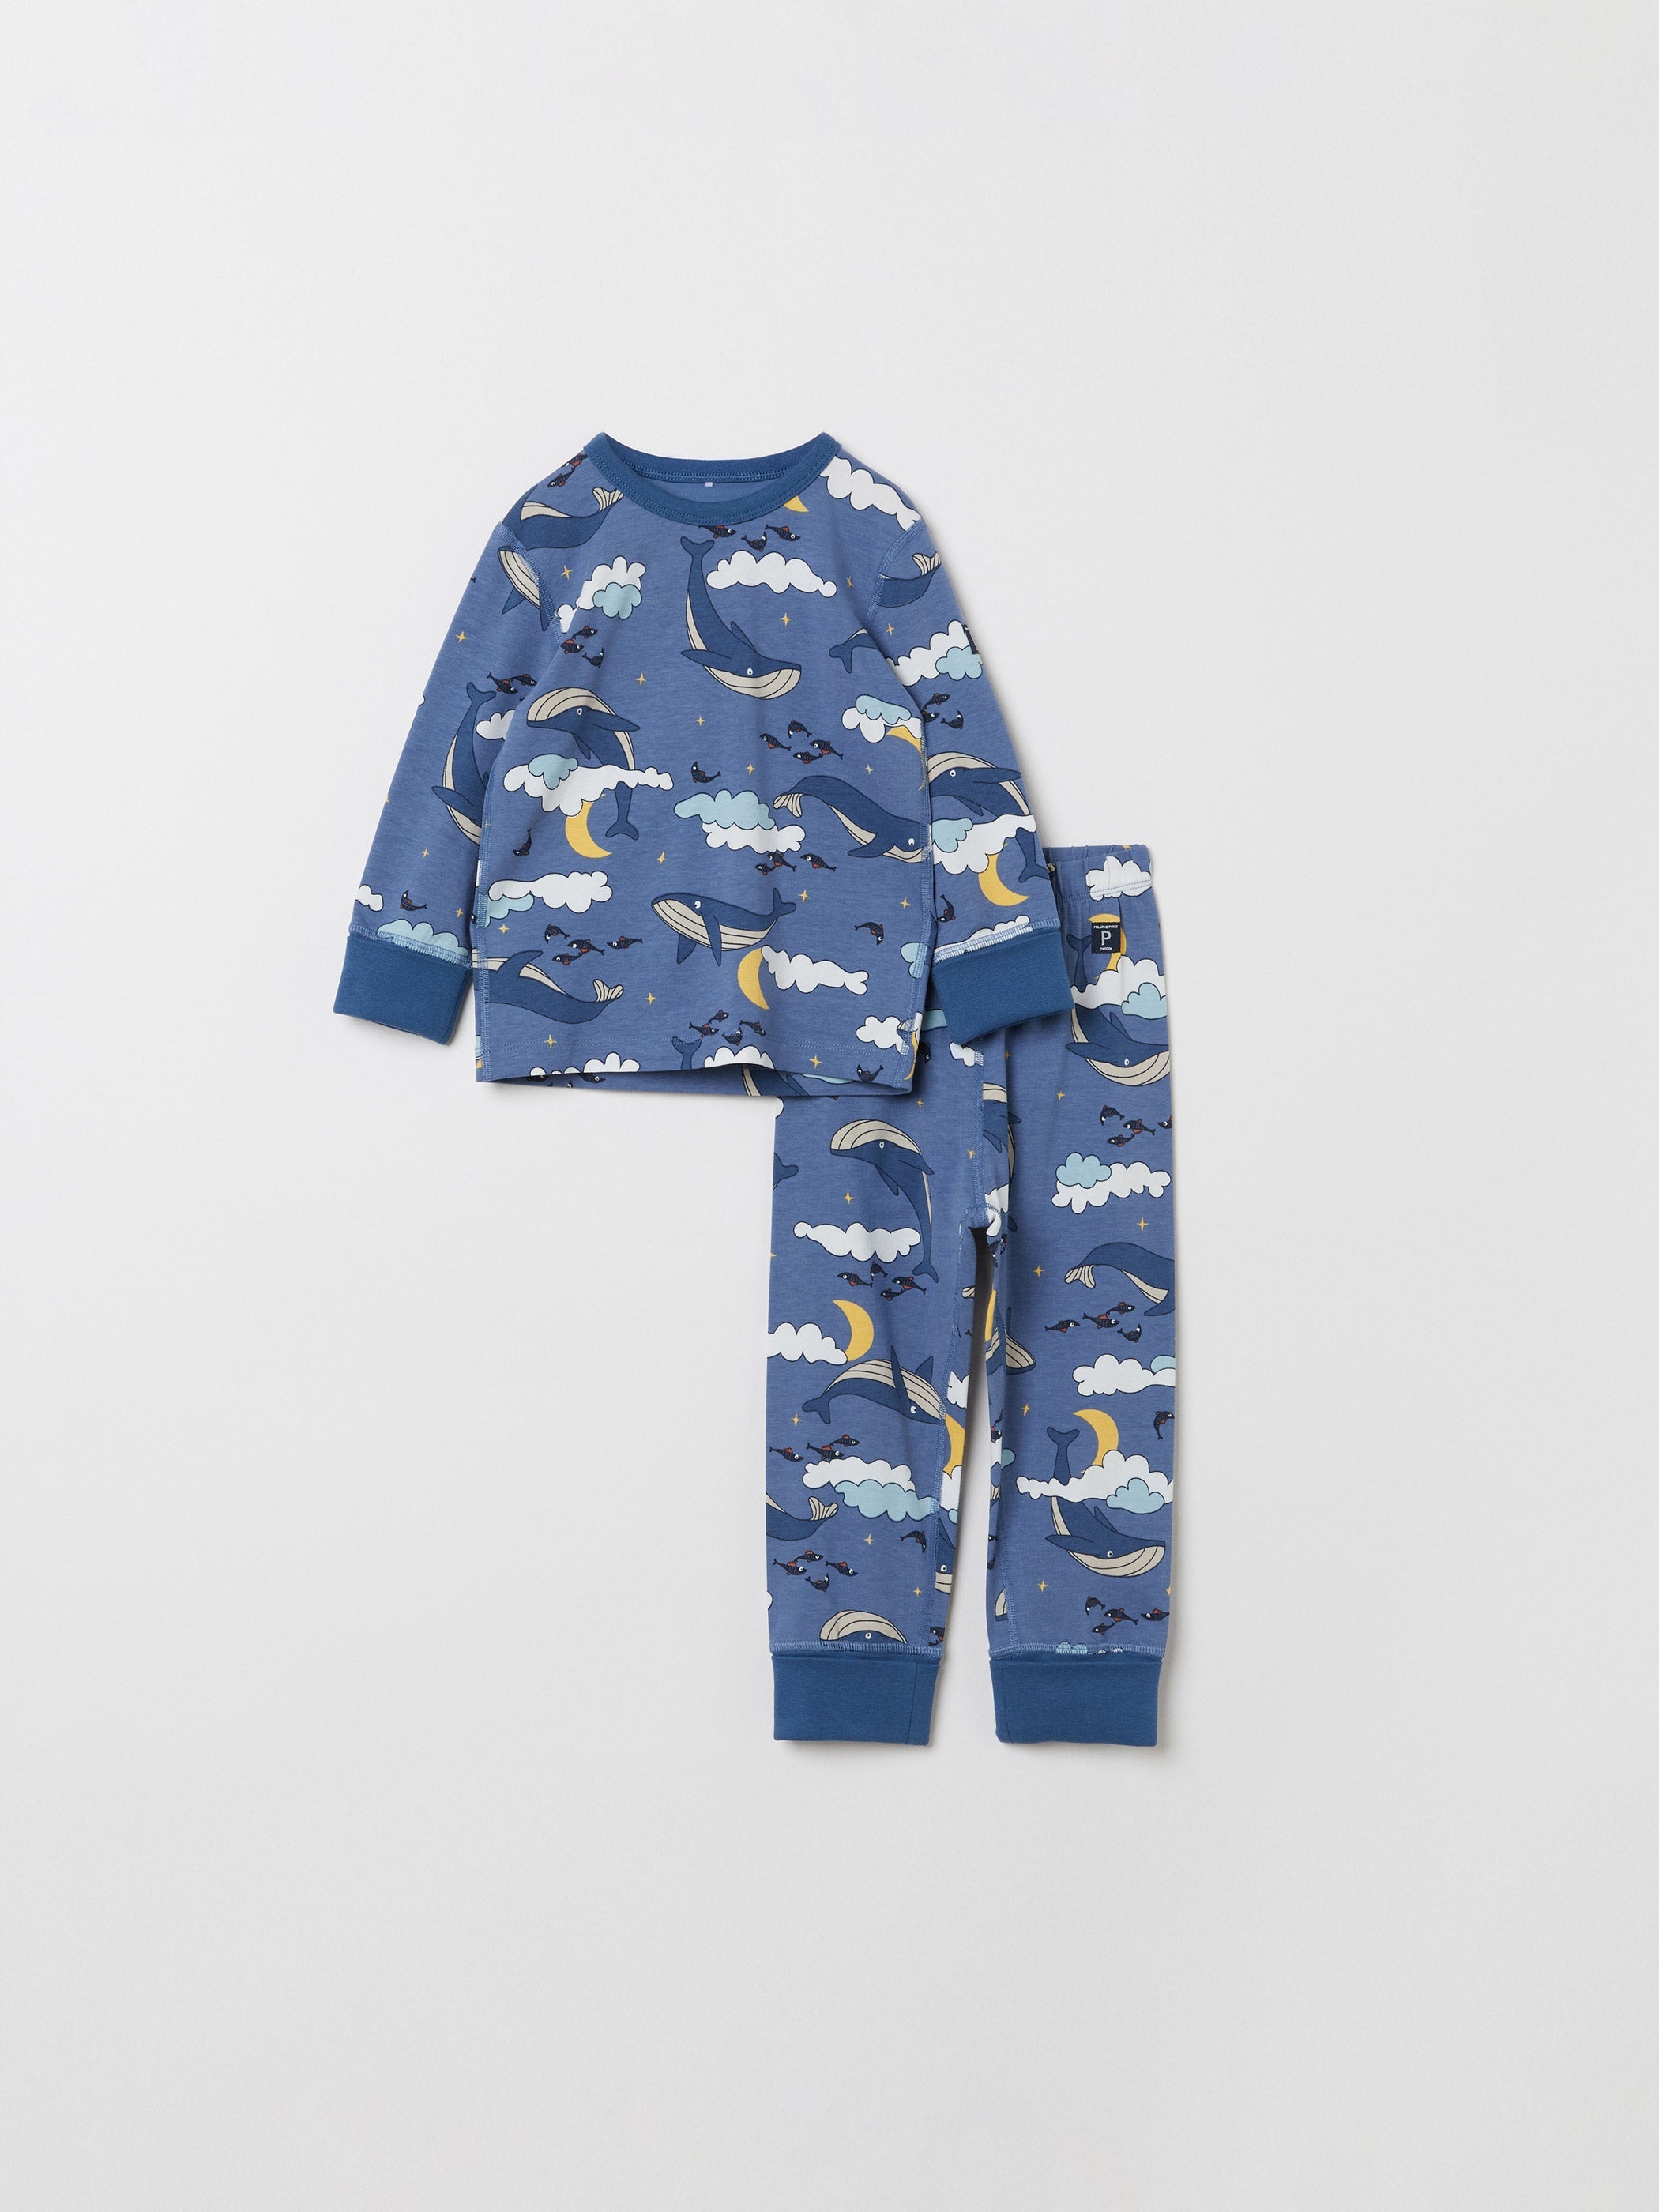 Whale Print Kids Pyjamas